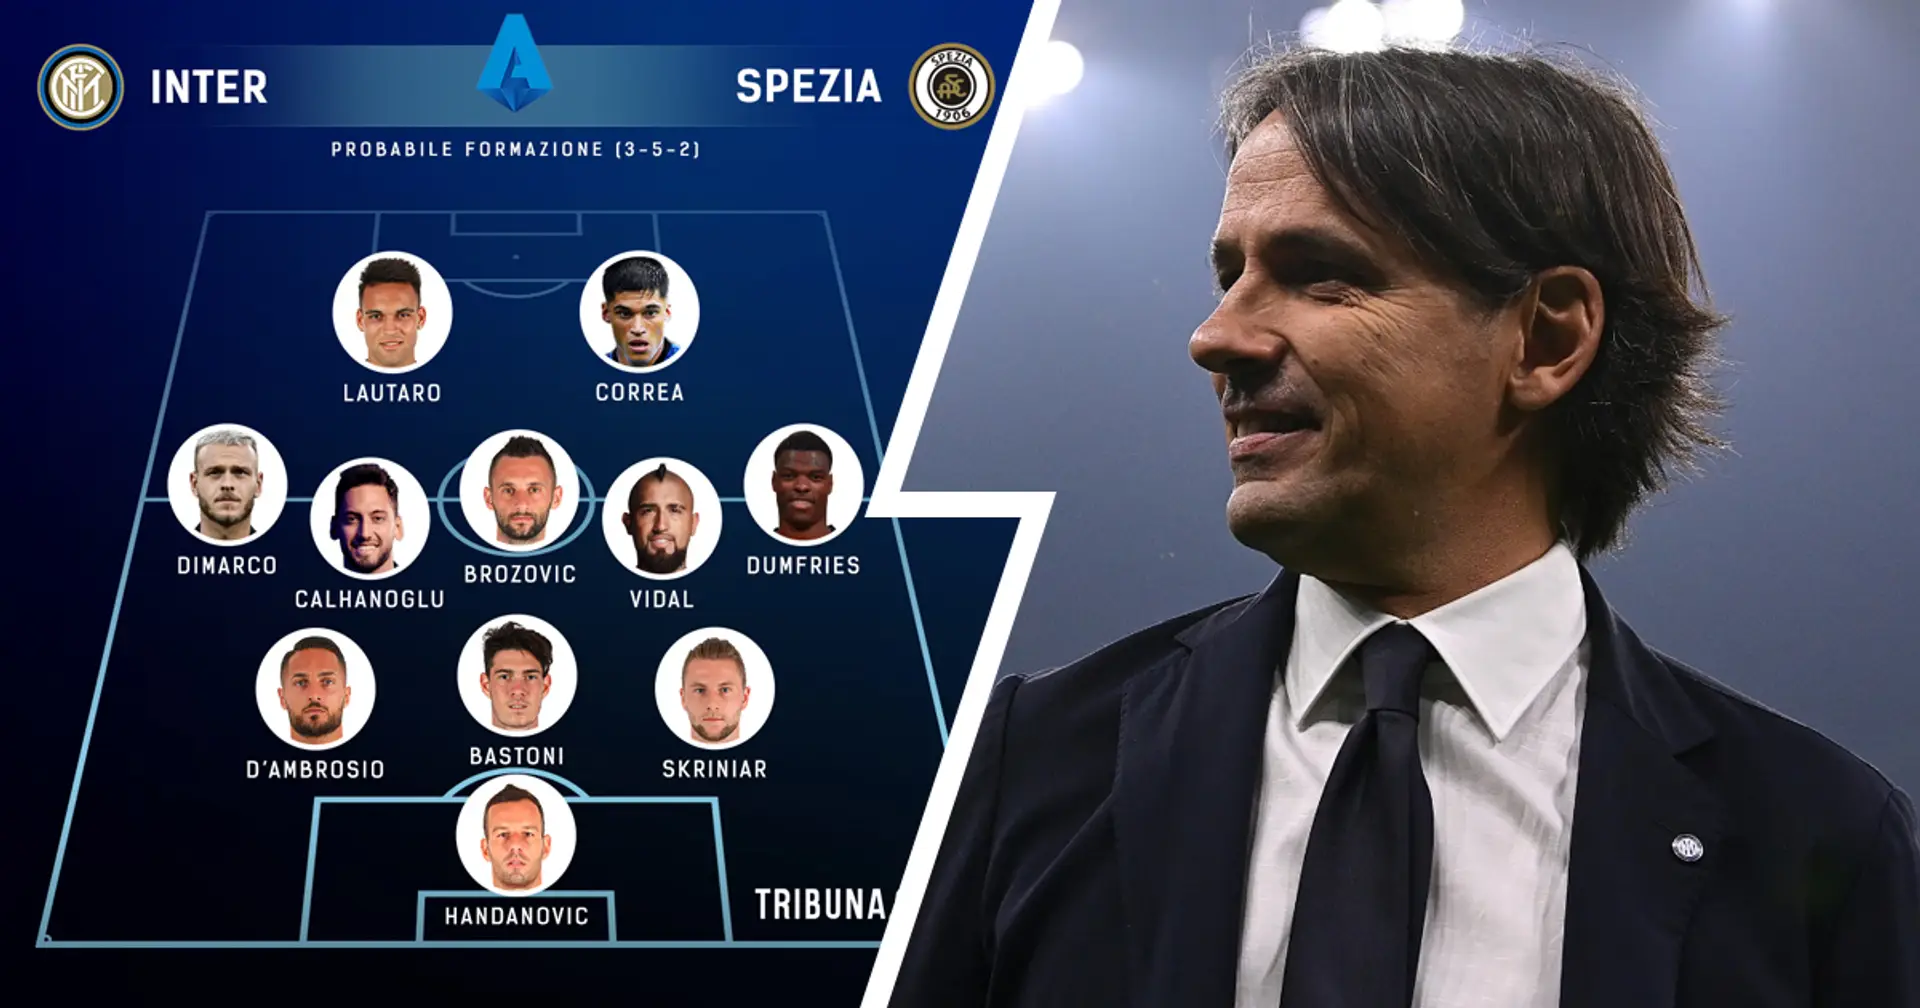 Inter vs Spezia, probabili formazioni e ultime notizie: ampio turnover per Inzaghi, davanti Correa e Lautaro dal 1'